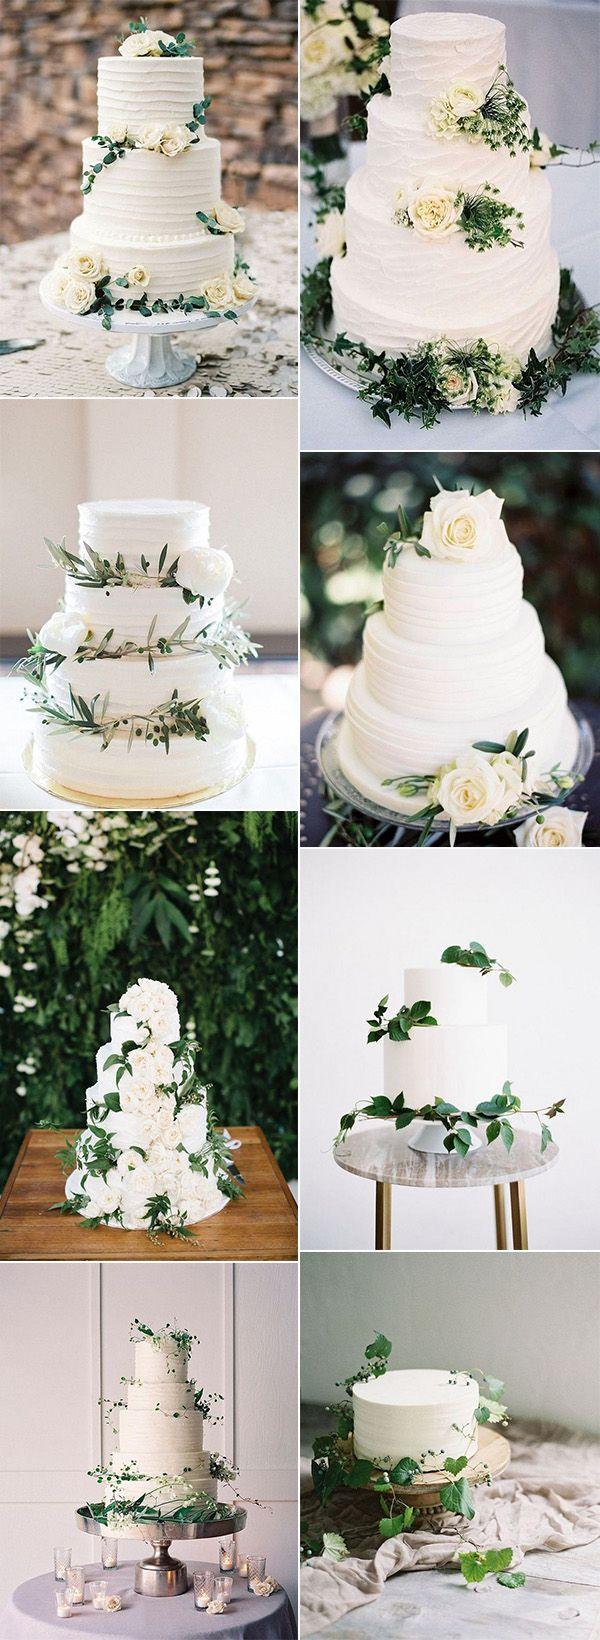 زفاف - 15 Amazing White And Green Elegant Wedding Cakes